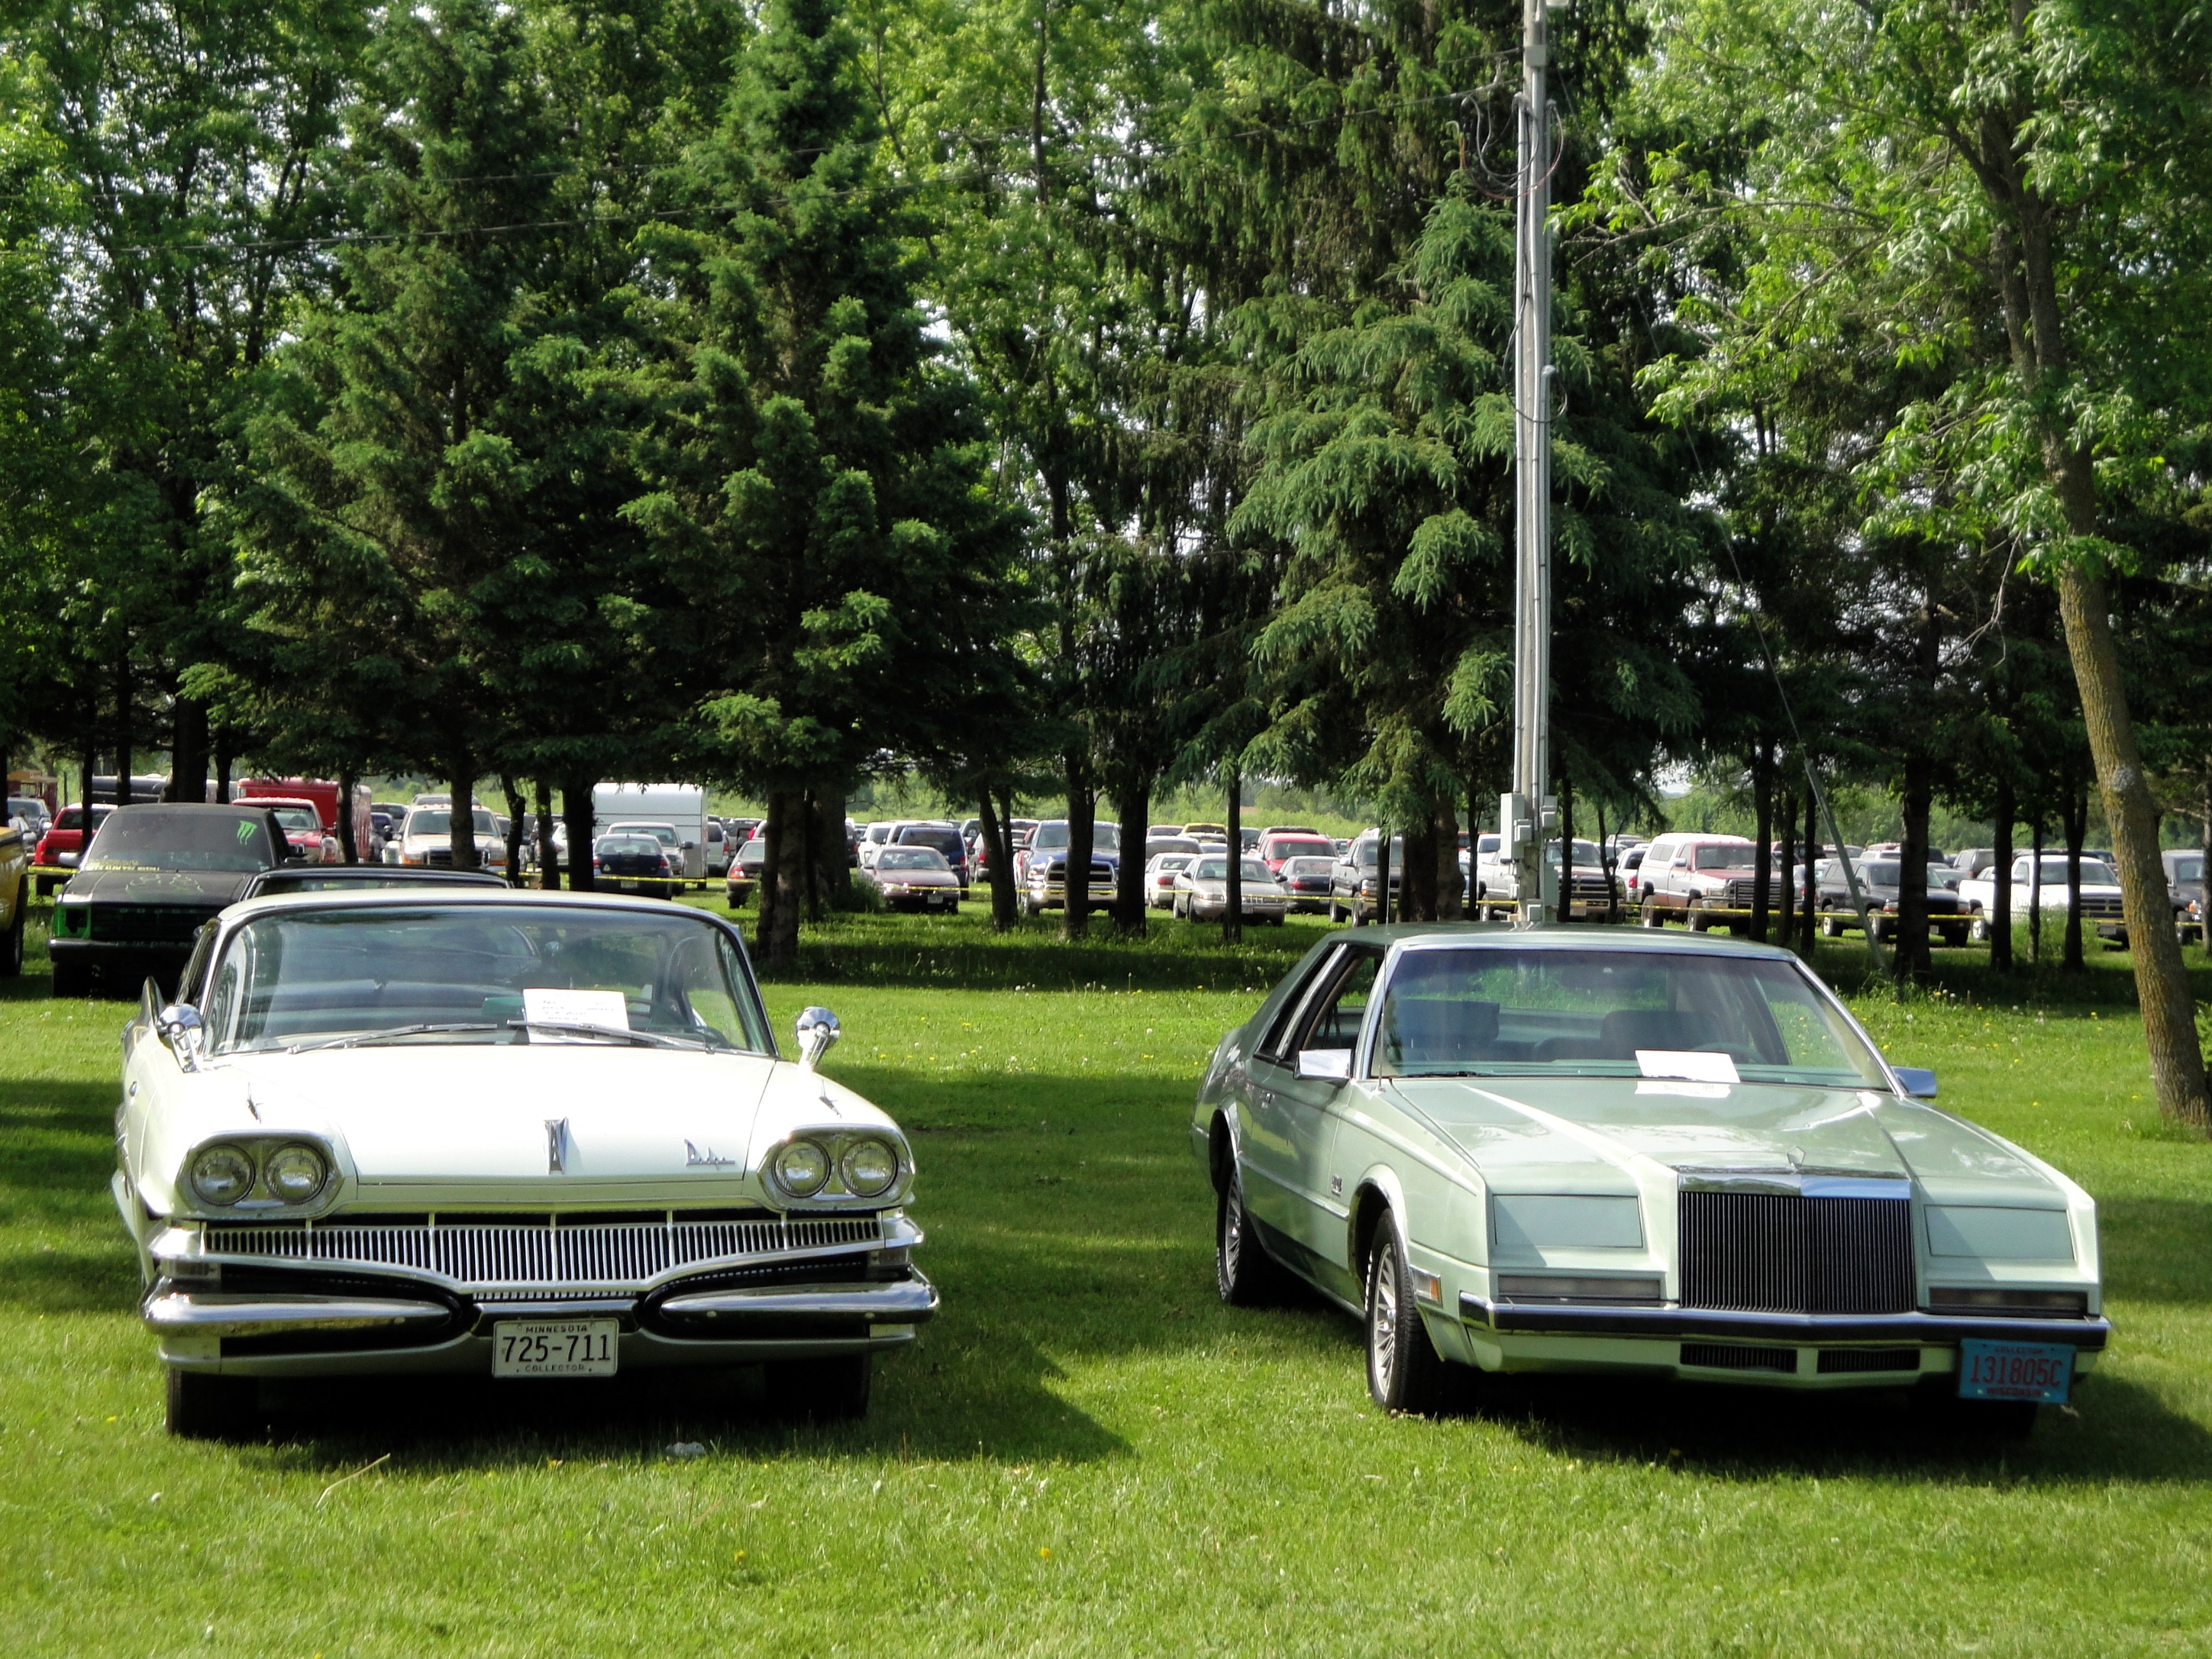 60 Dodge Dart Phoenix et 81 Chrysler Imperial | Flickr - Partage de photos!